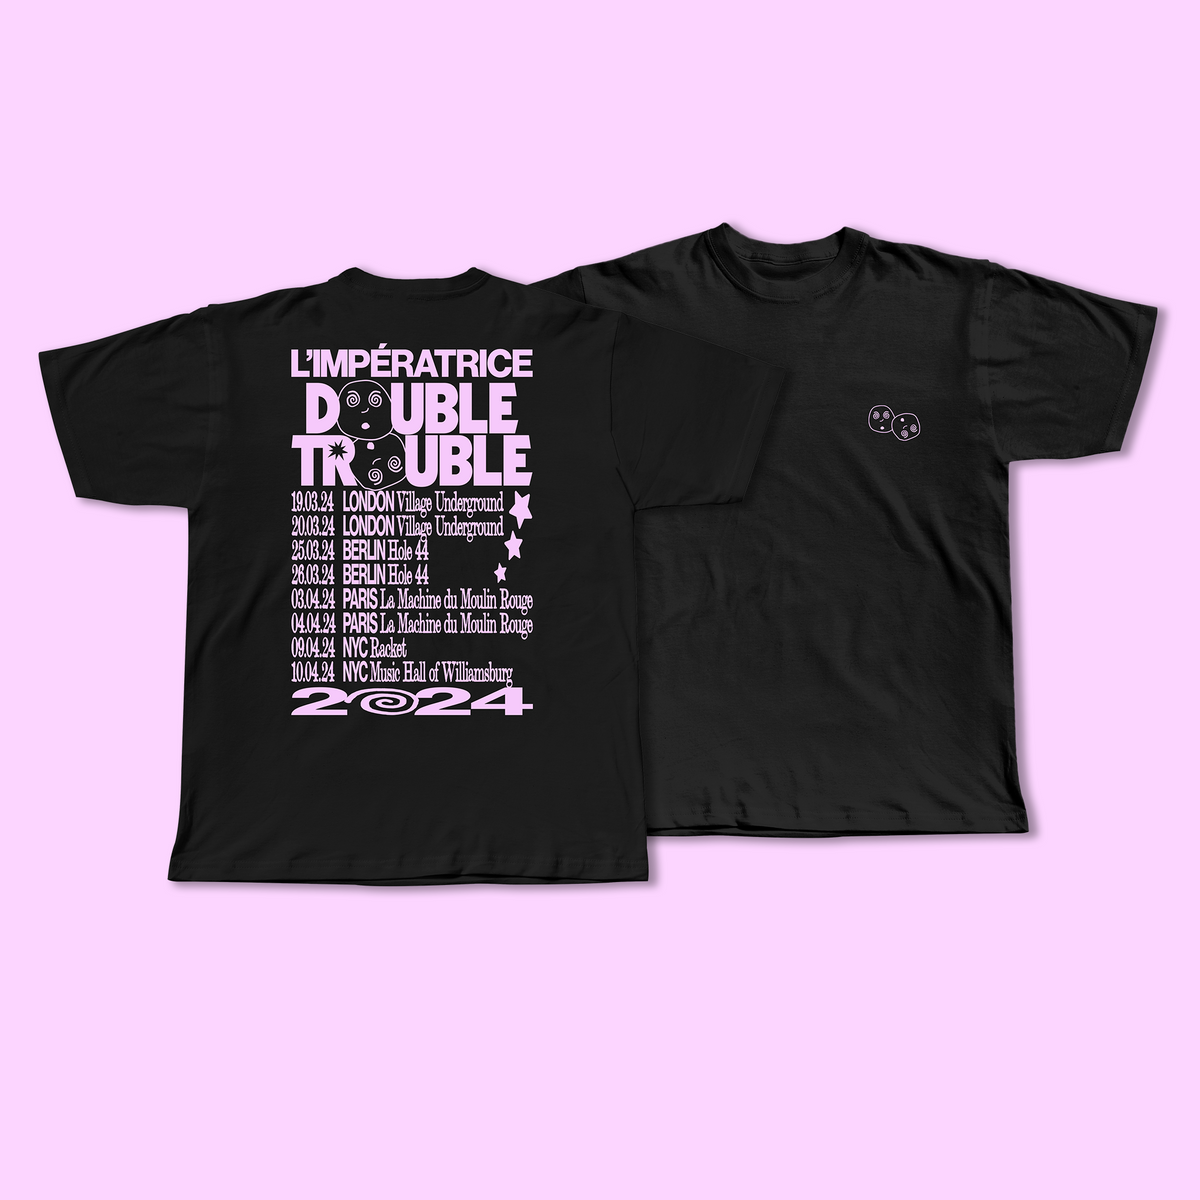 Double Trouble Tour - T-Shirt